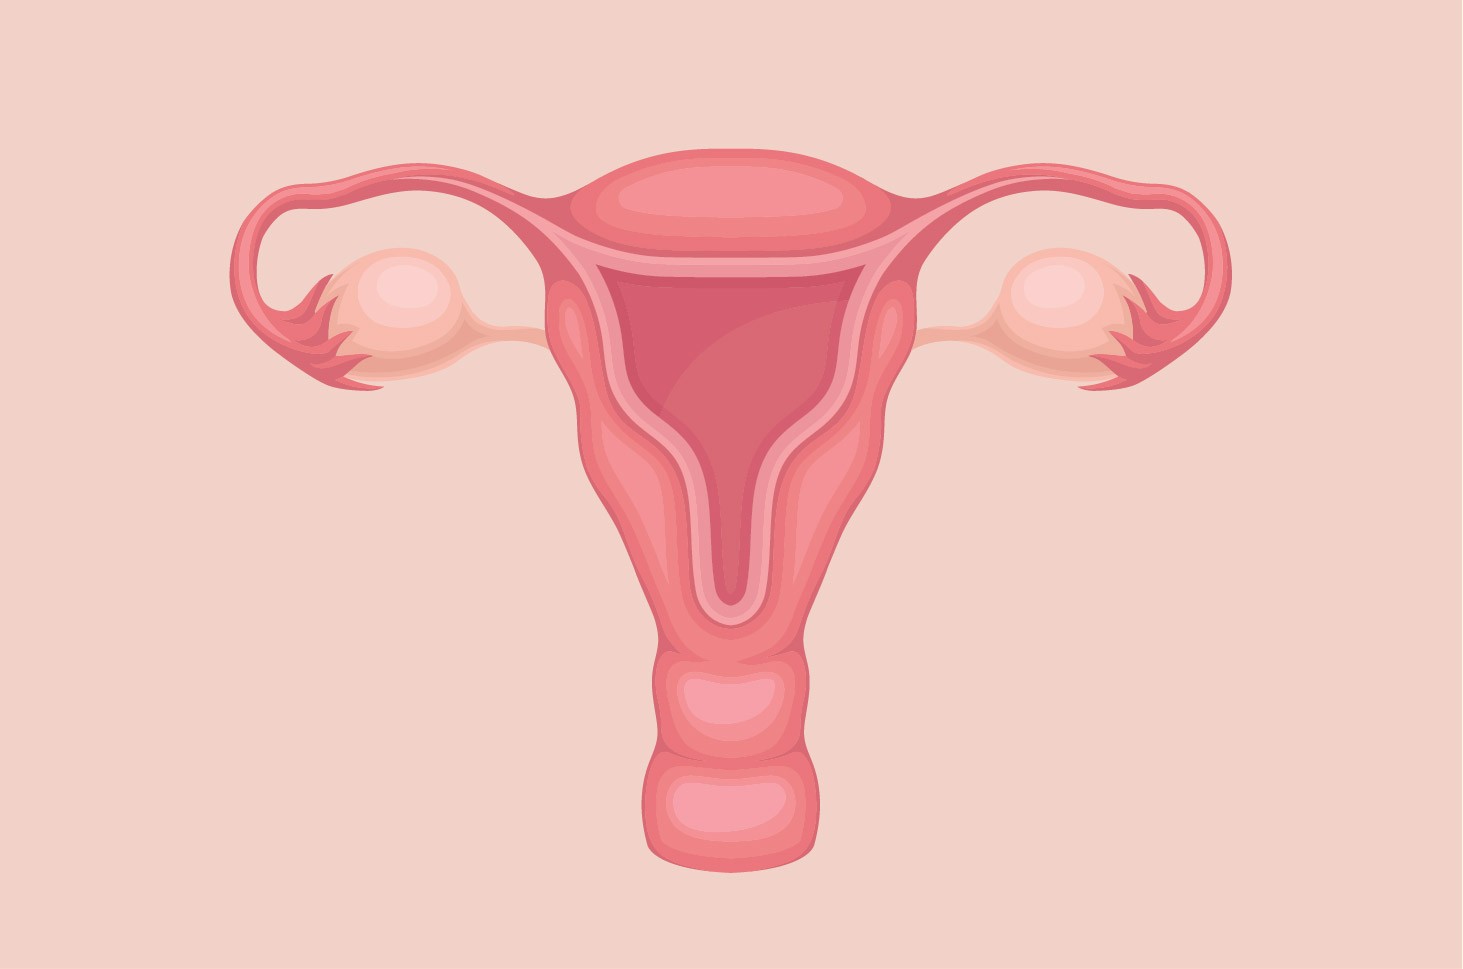 Uterus merupakan organ reproduksi wanita yang berfungsi sebagai